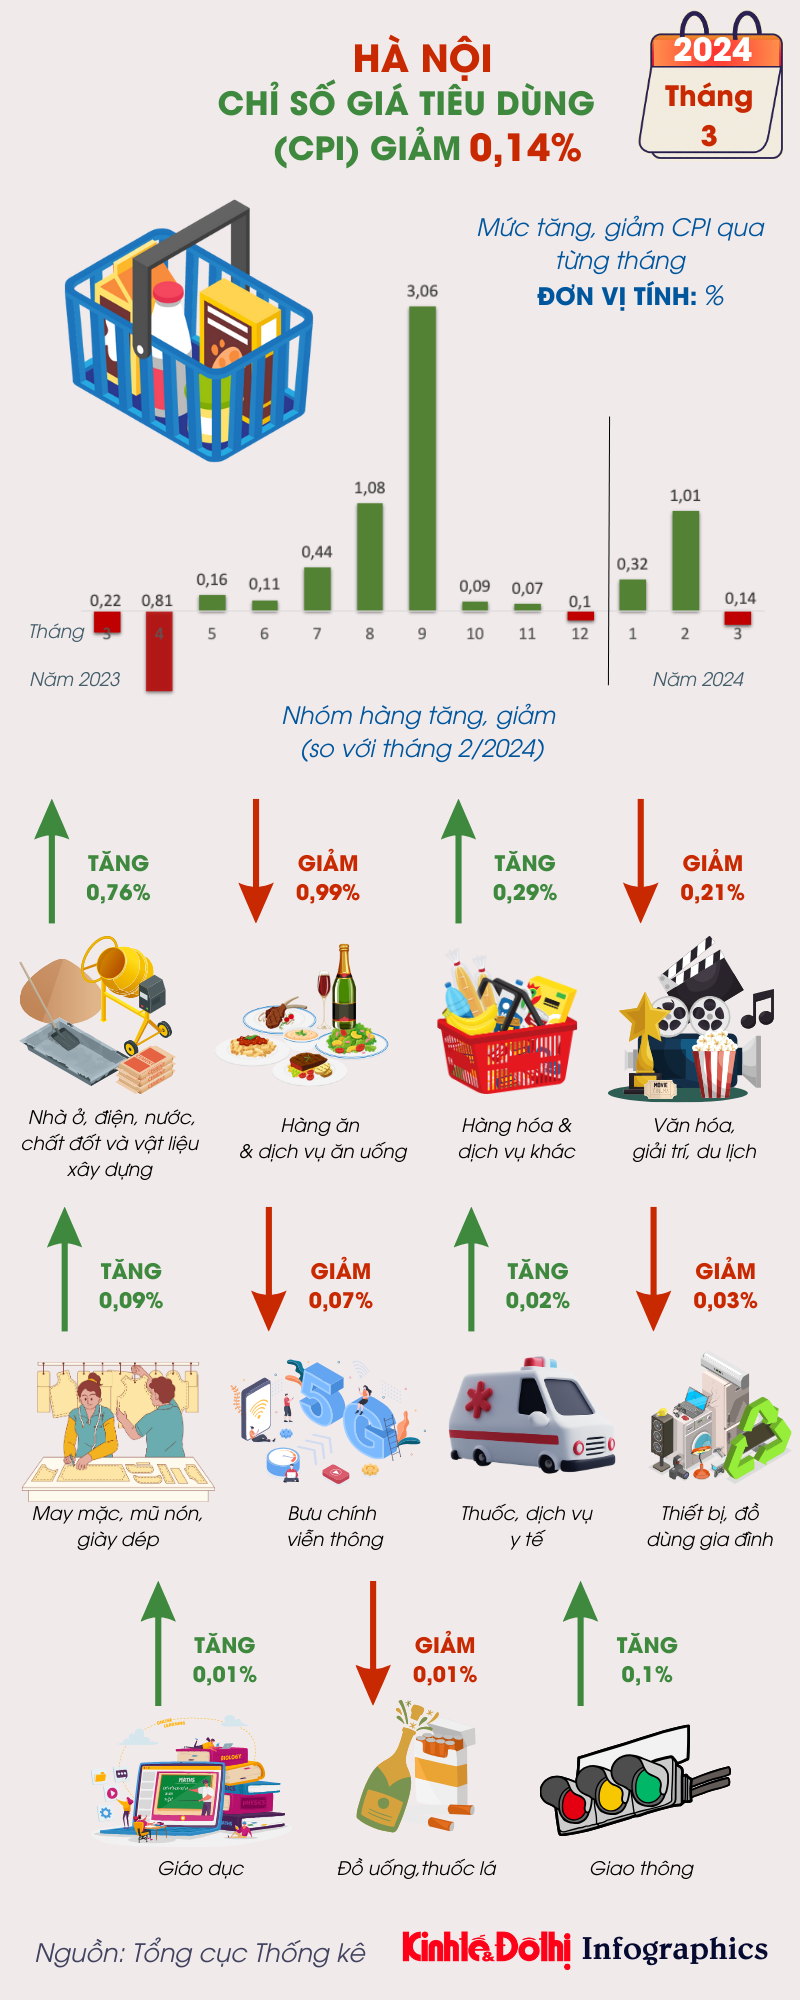 Chỉ số giá tiêu dùng tháng 3/2024 của Hà Nội giảm nhẹ  - Ảnh 1